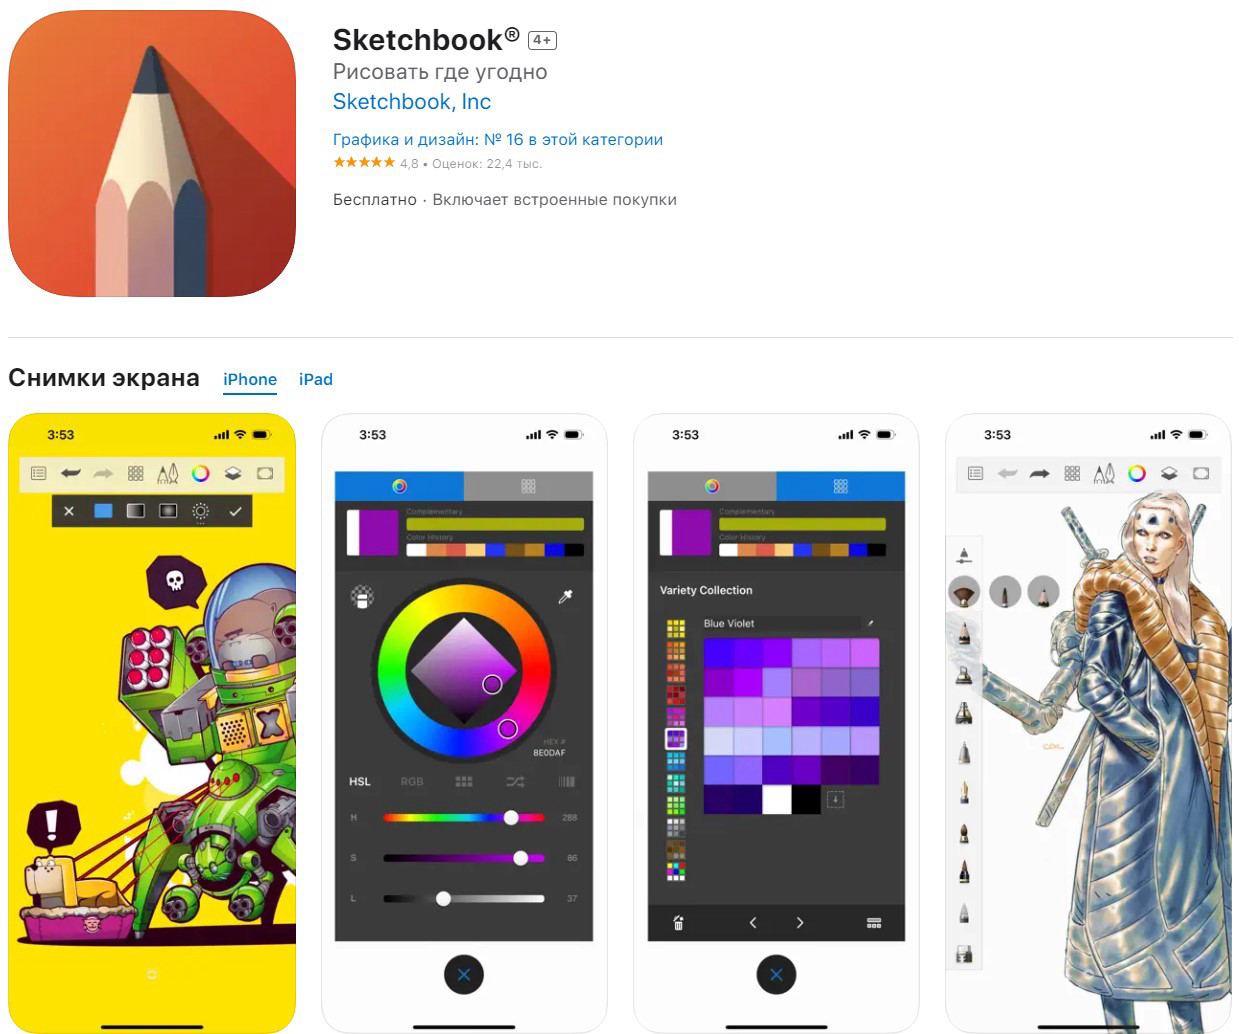 Приложение Sketchbook (для iOS и Android)